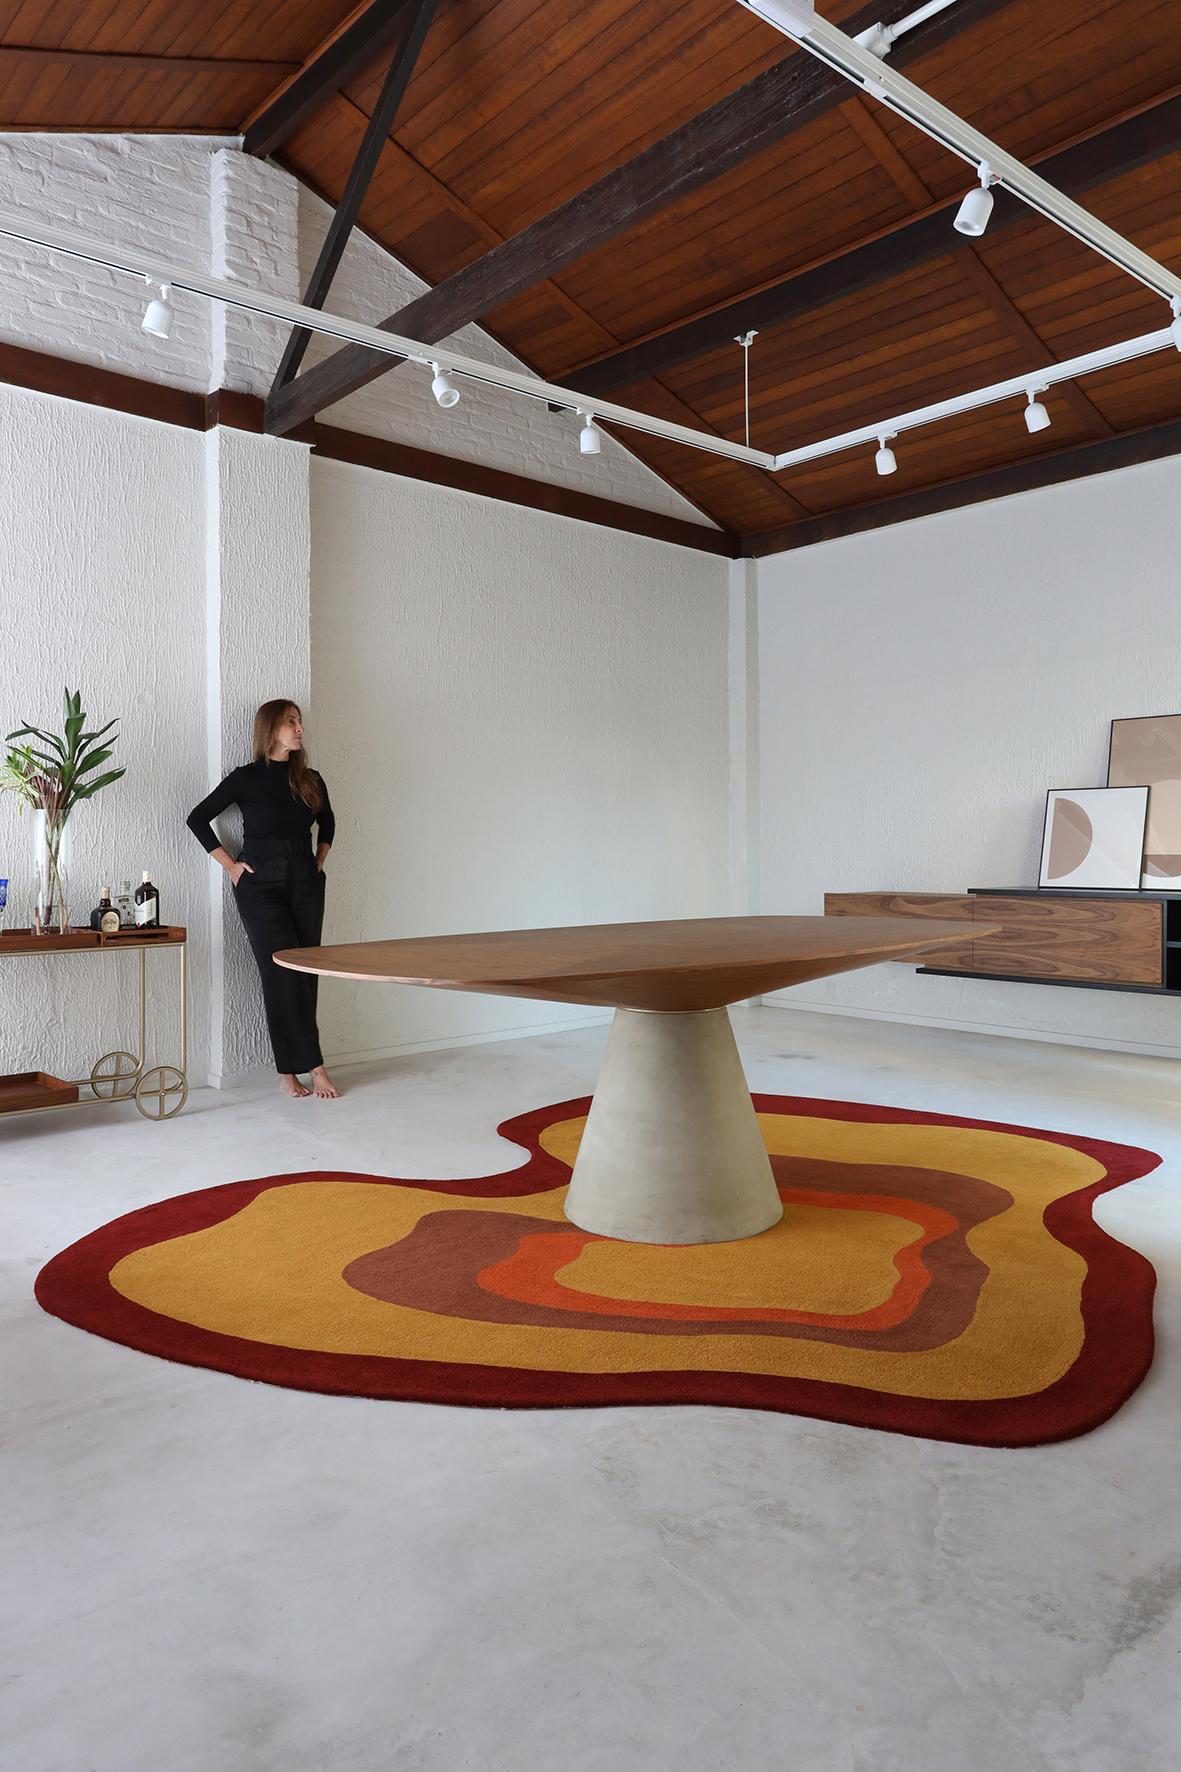 Le tapis Pompeia est inspiré par Lina Bo Bardi. Les rayures et le mélange de textures donnent un résultat et une touche uniques à cette pièce. 

Les tailles sont personnalisables.

  